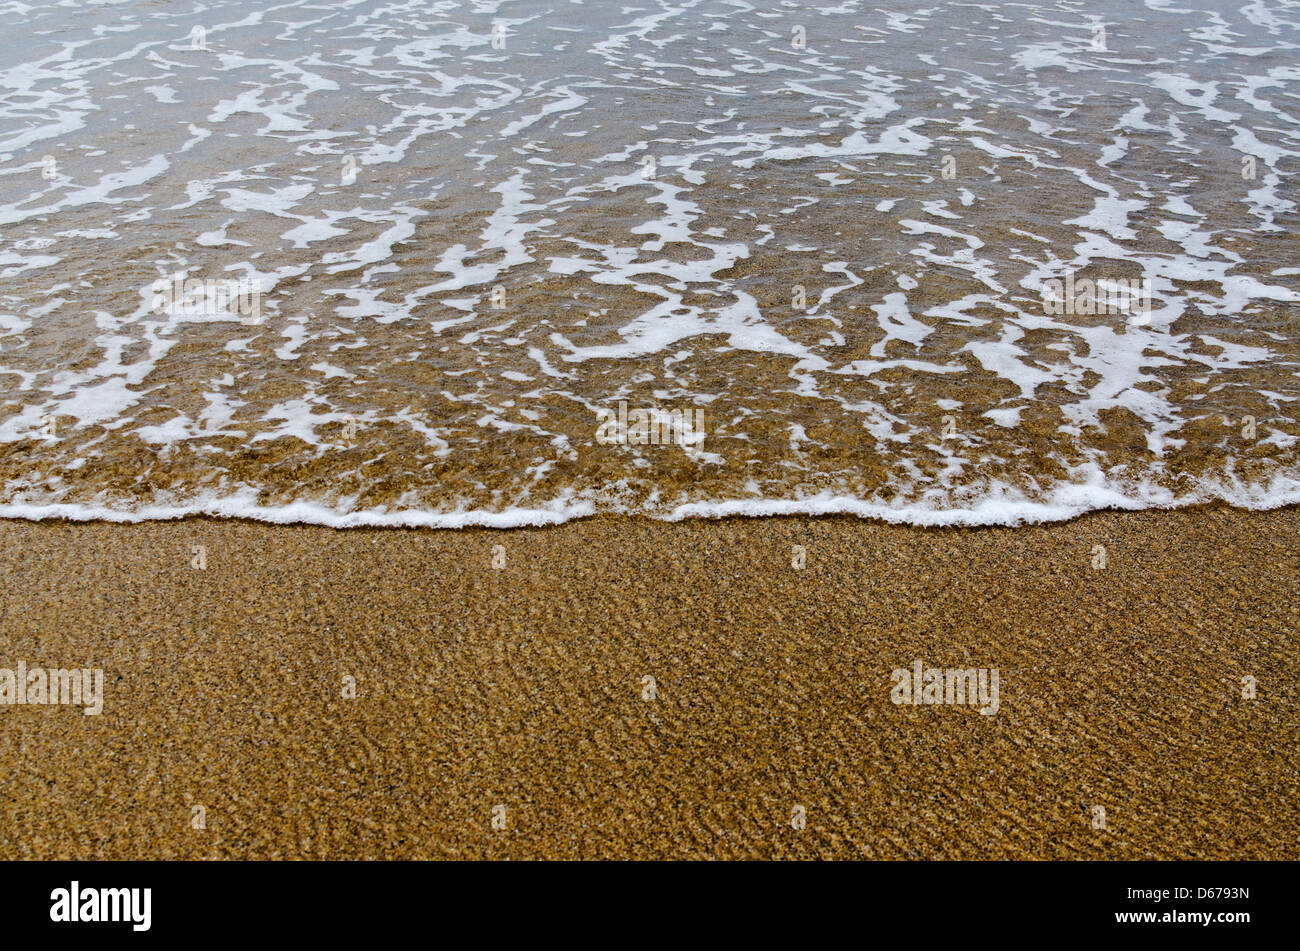 Dettaglio della sabbia e acqua di mare sulla spiaggia Foto Stock